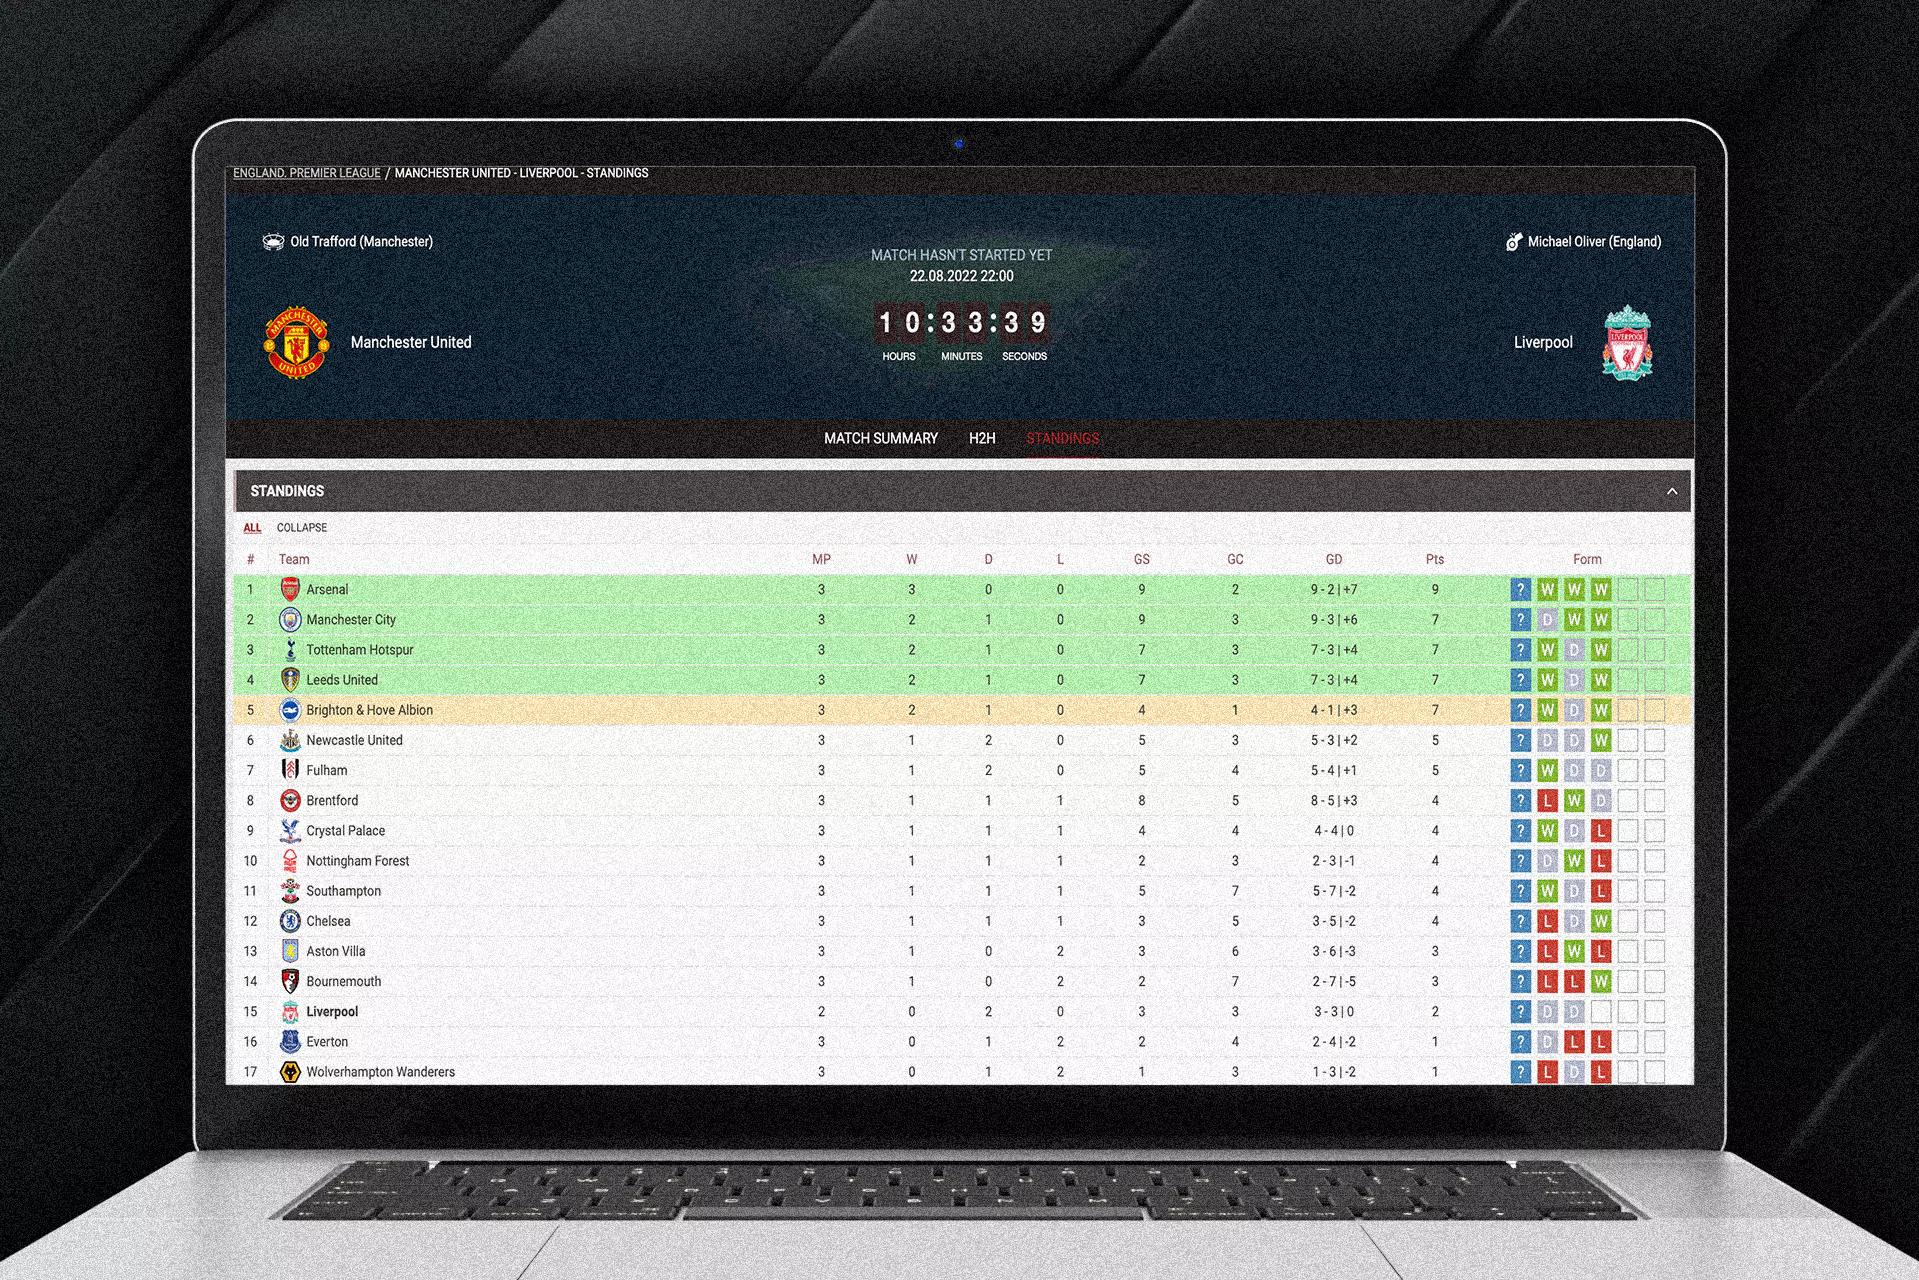 मैच के बाद, आप सीधे 888starz साइट पर परिणाम और आँकड़े देख सकते हैं।